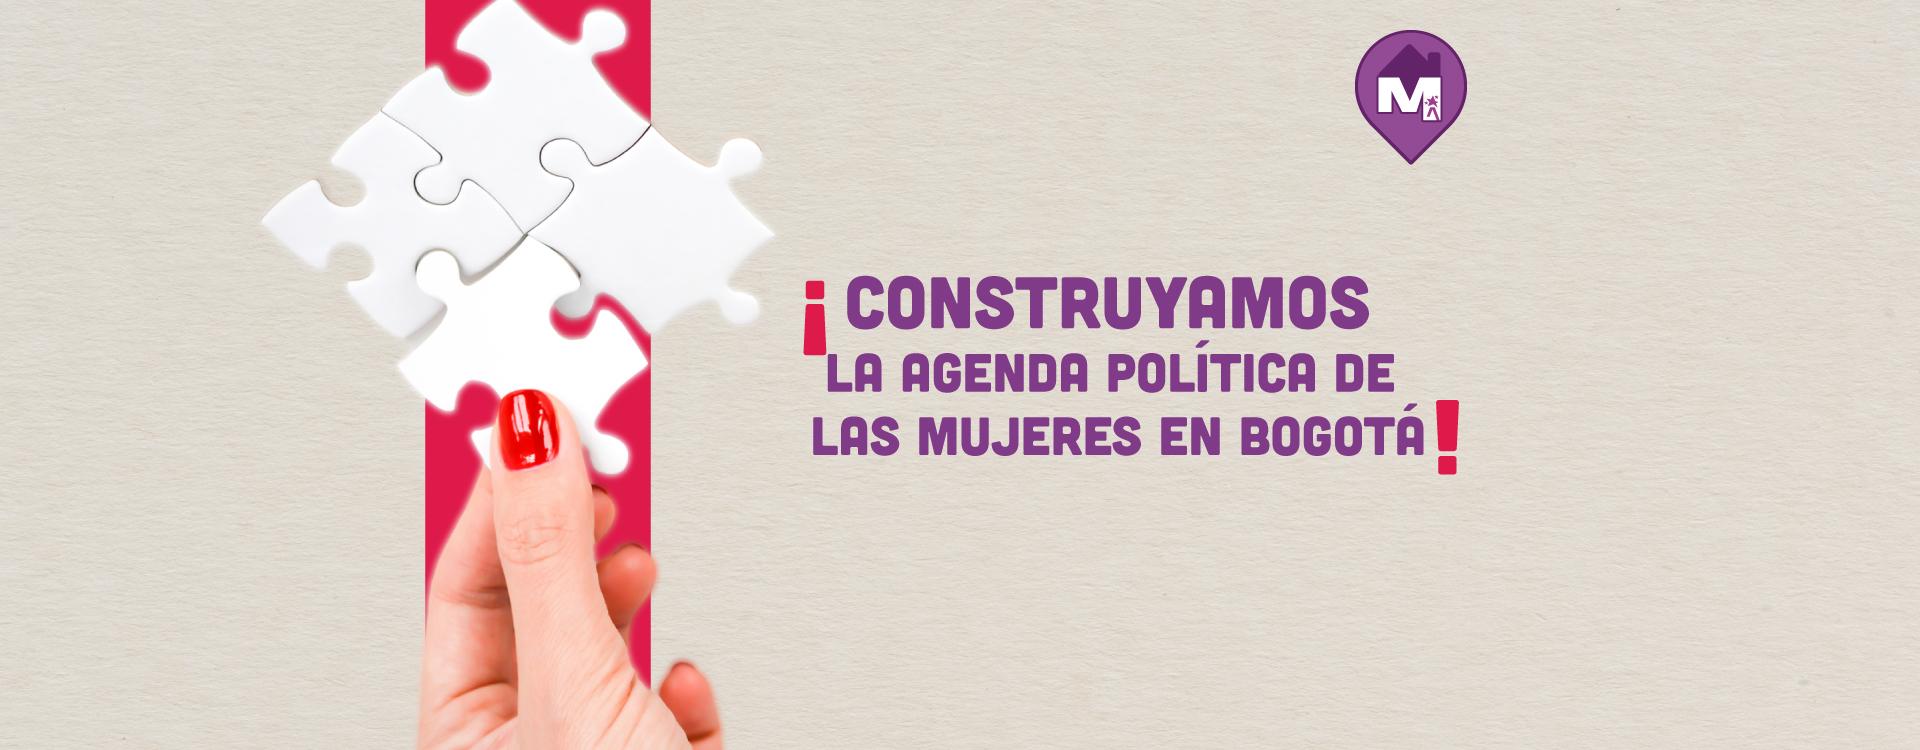 Construyamos  la agenda política de  las mujeres en Bogotá